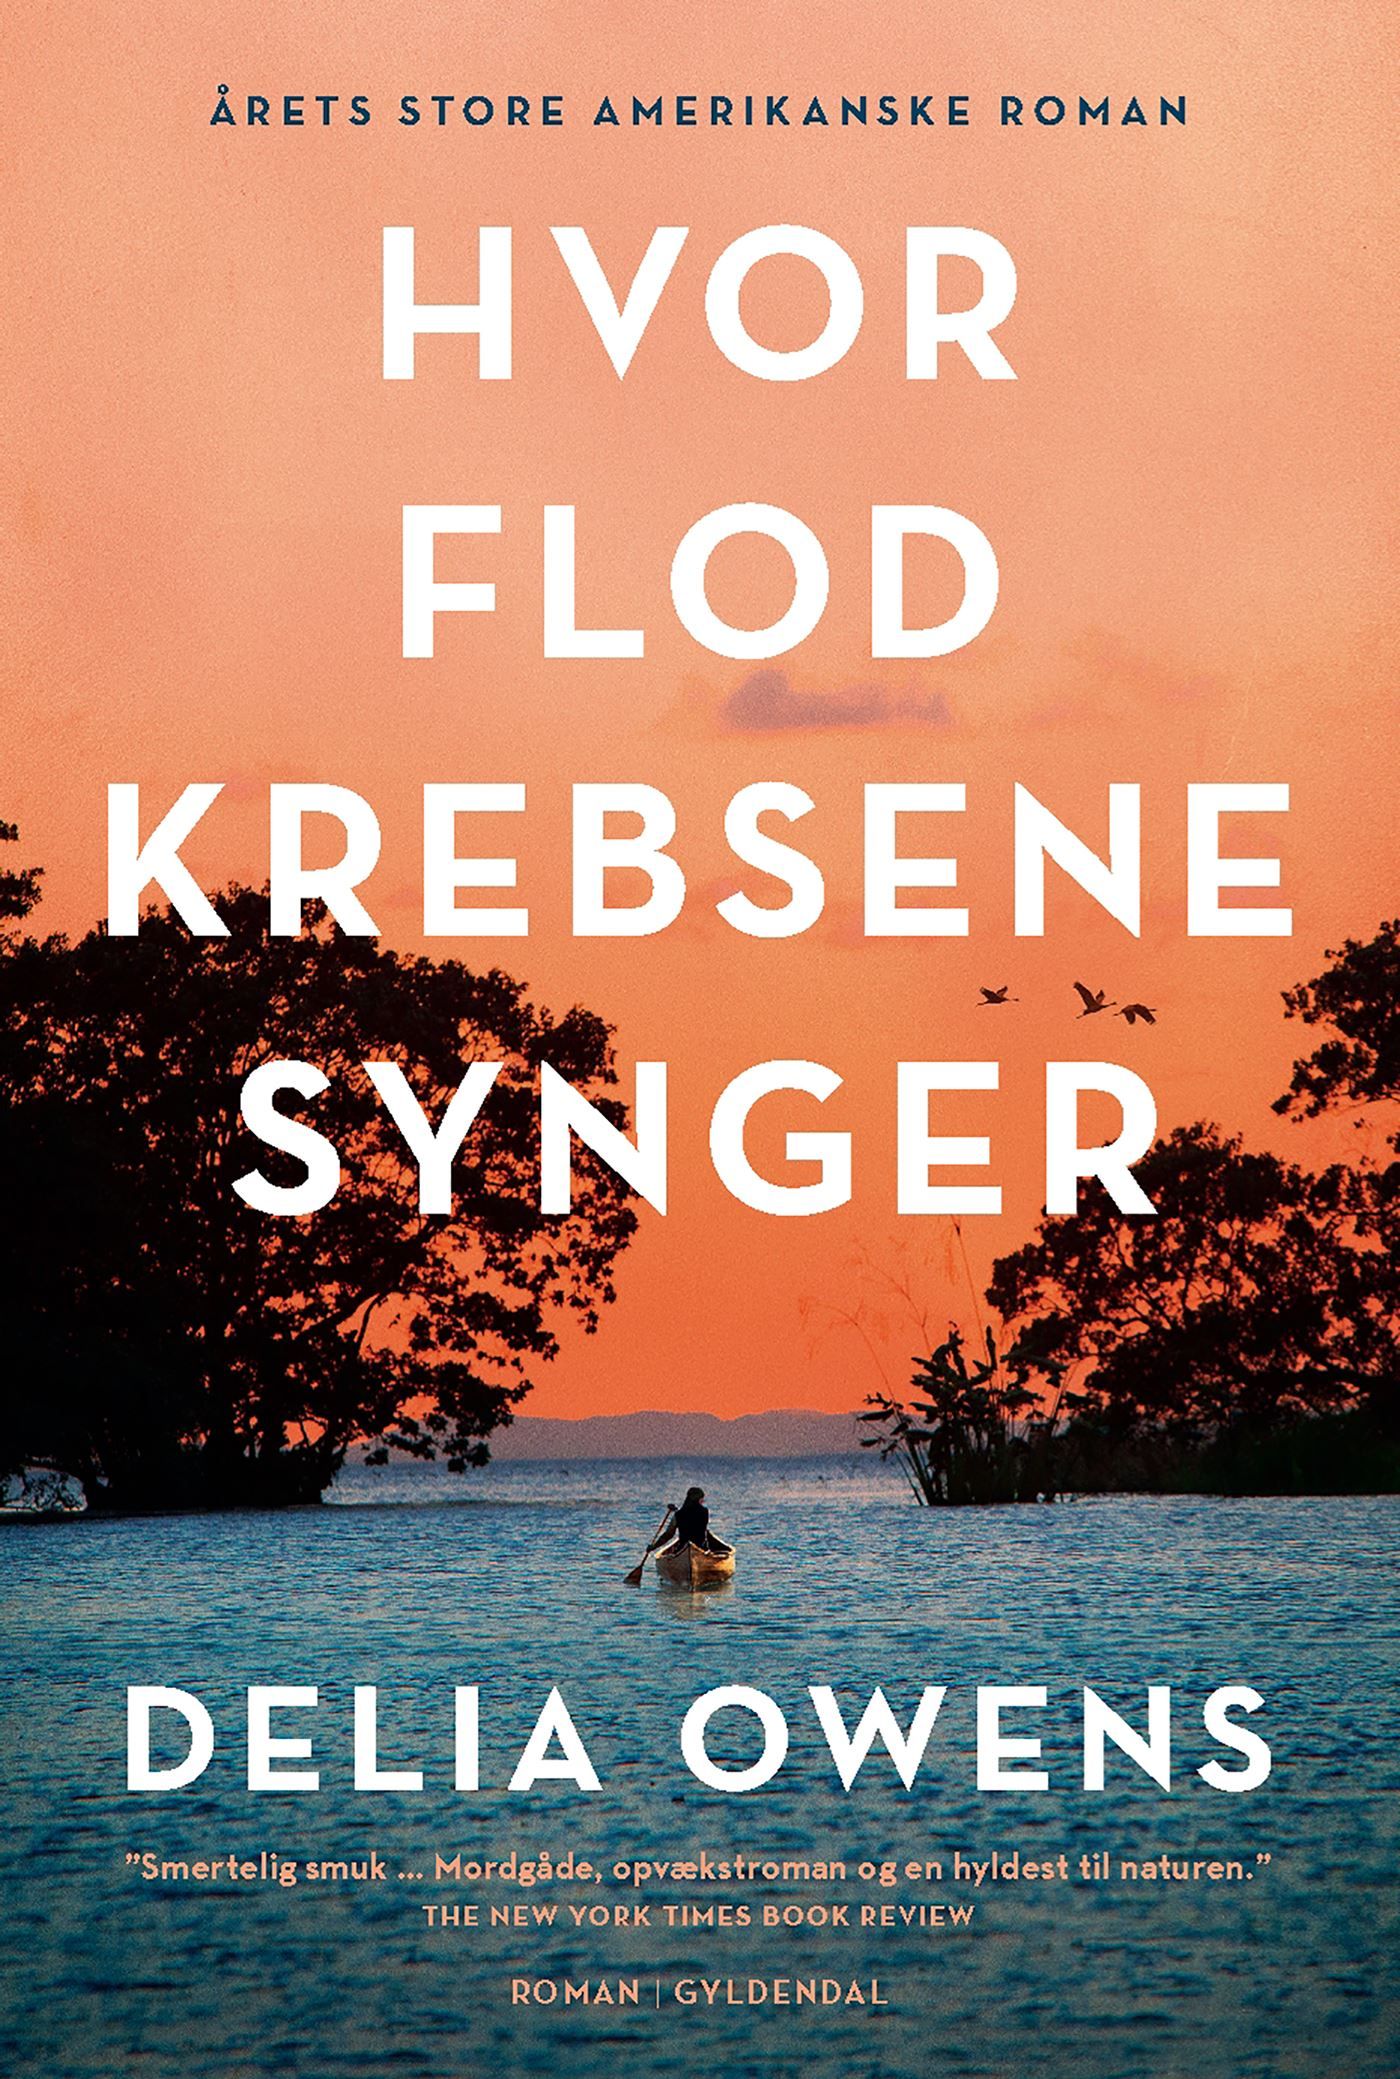 Hvor flodkrebsene synger, e-bog af Delia Owens